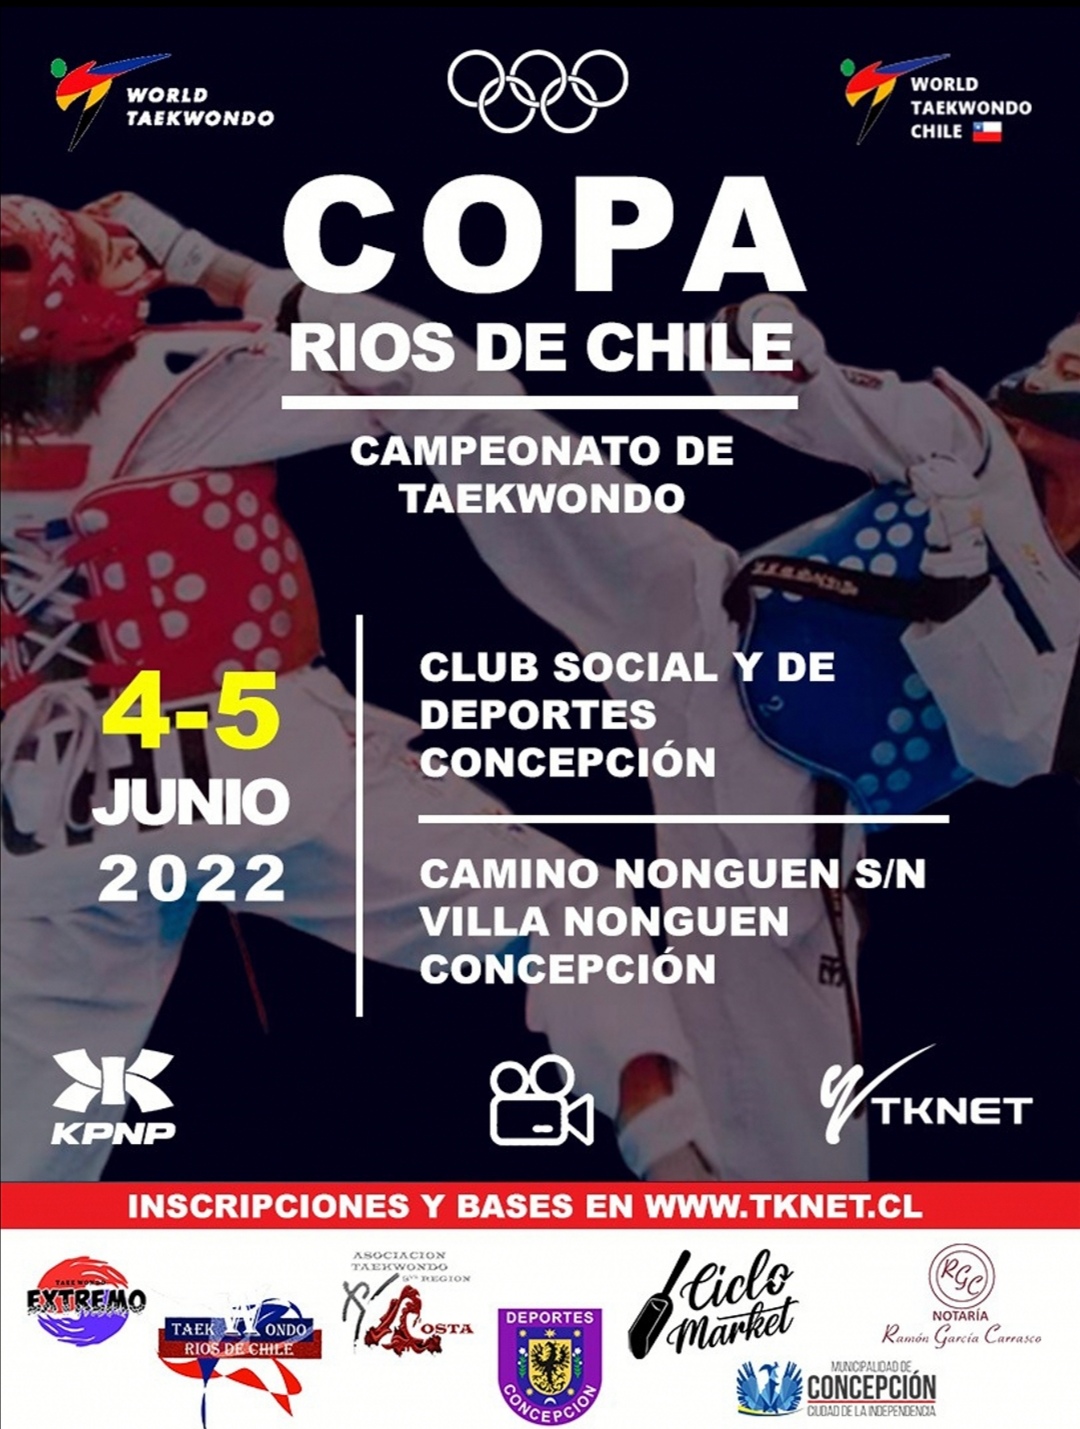 Club Deportivo y Social Rios de Chile